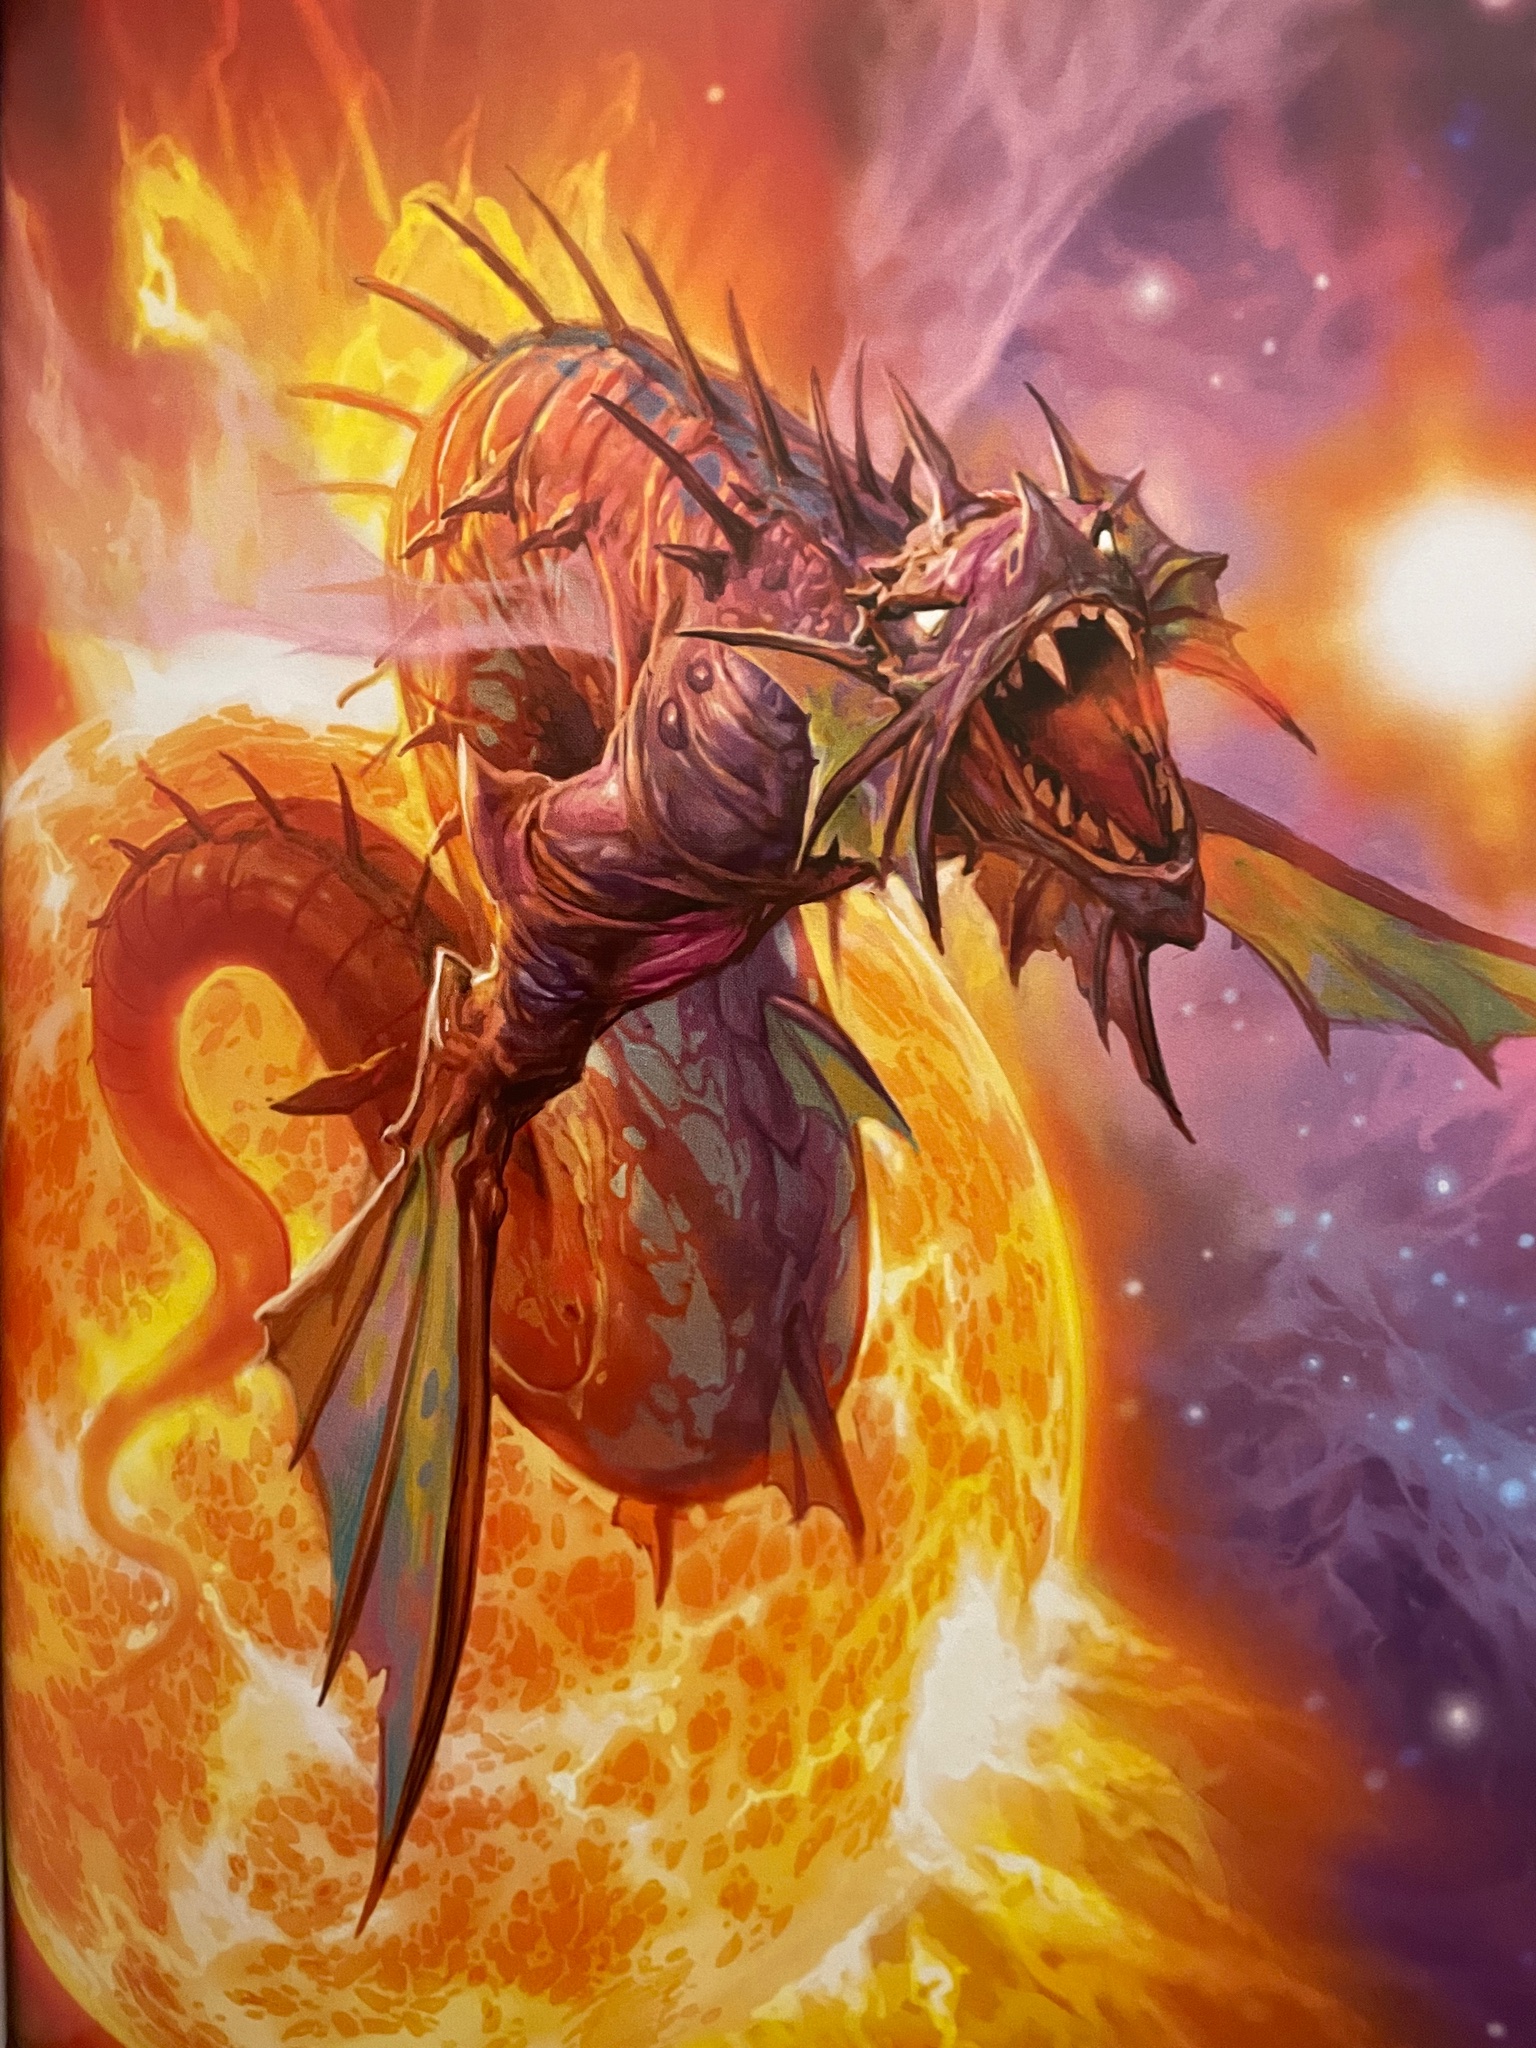 5e solar dragon aka spelljammer sun dragon.jpg